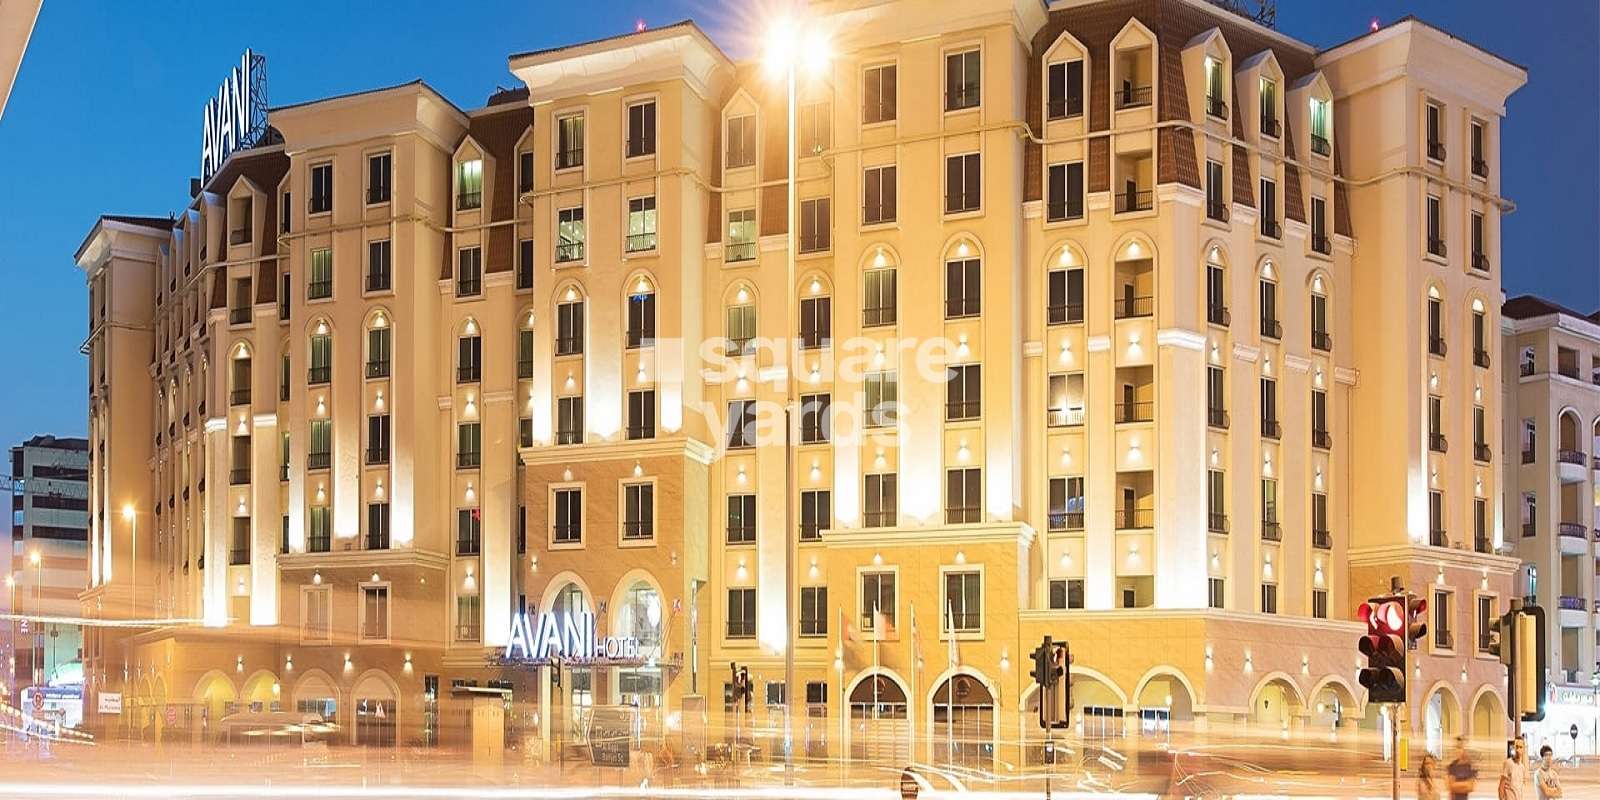 Avani Deira Dubai Hotel Cover Image